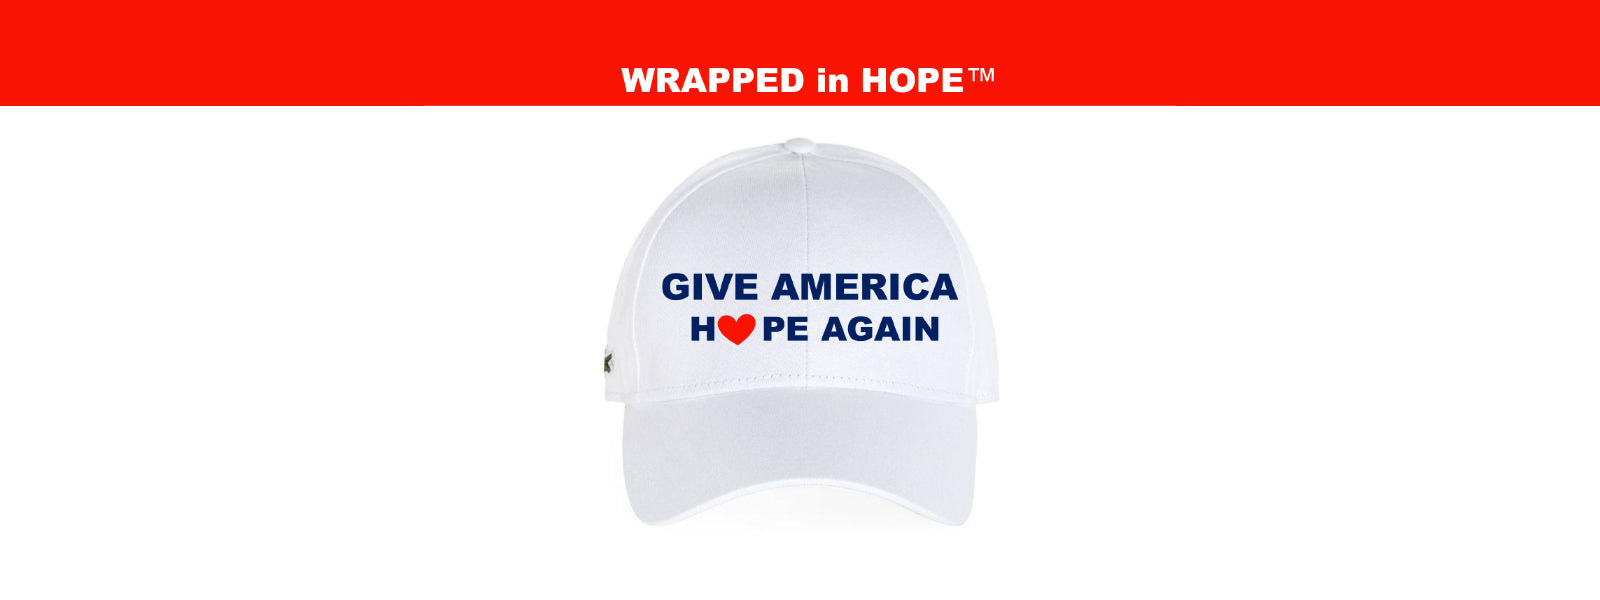 Give America Hope Again